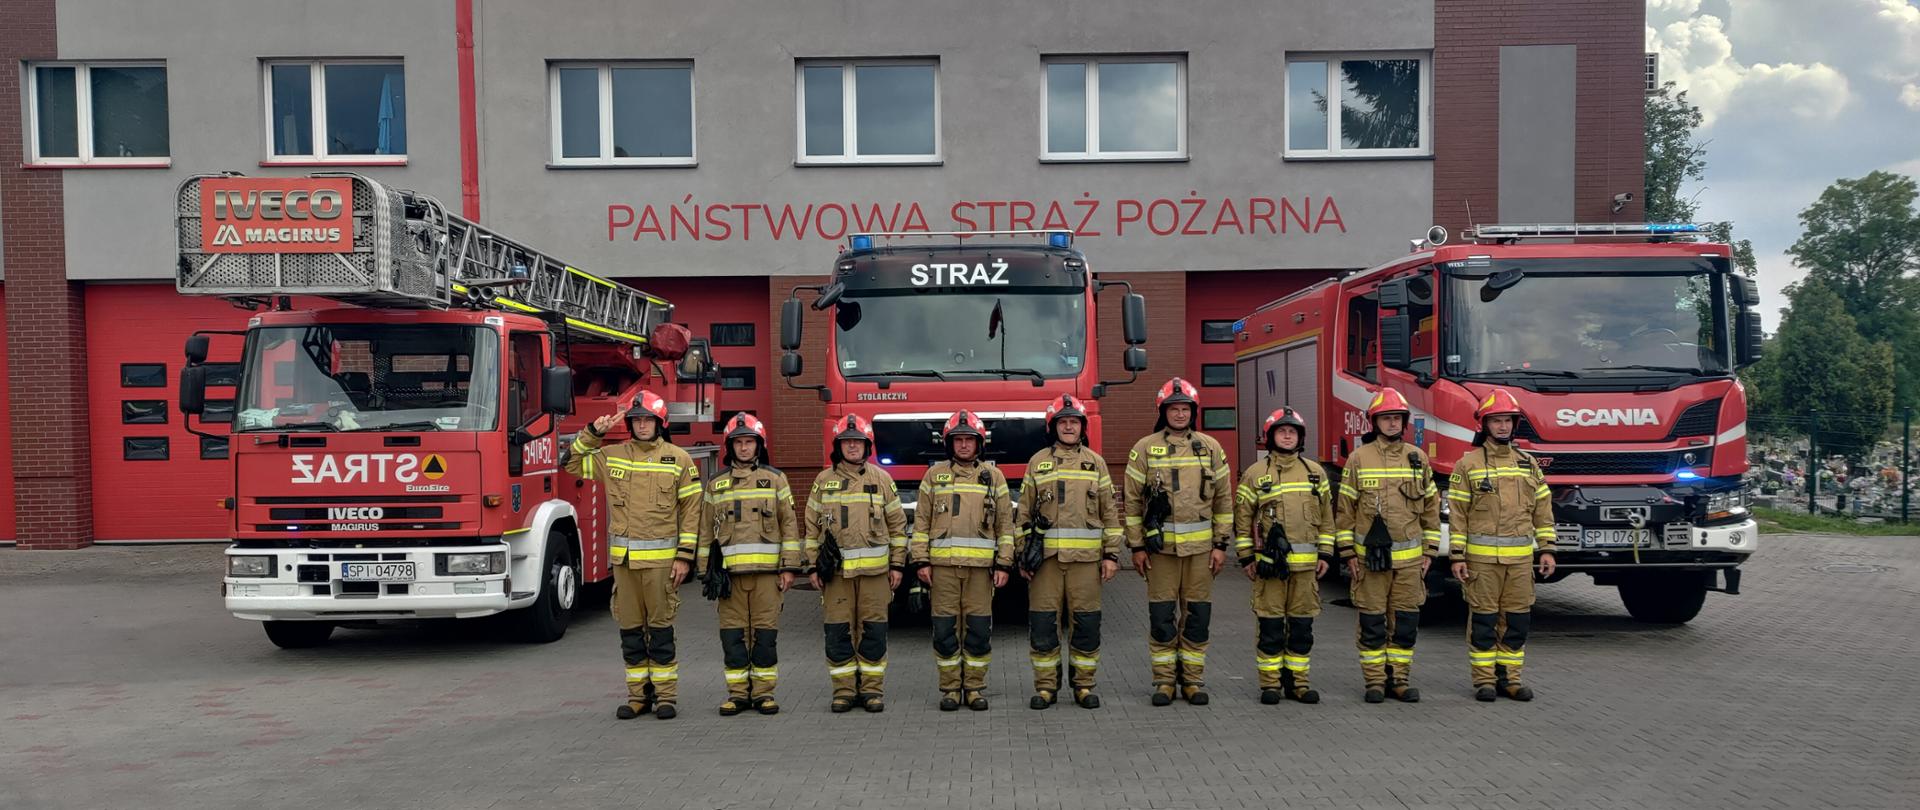 Zdjęcie przedstawia 9 strażaków ubranych w ubrania specjalne stojących w szeregu na tle samochodów pożarniczych